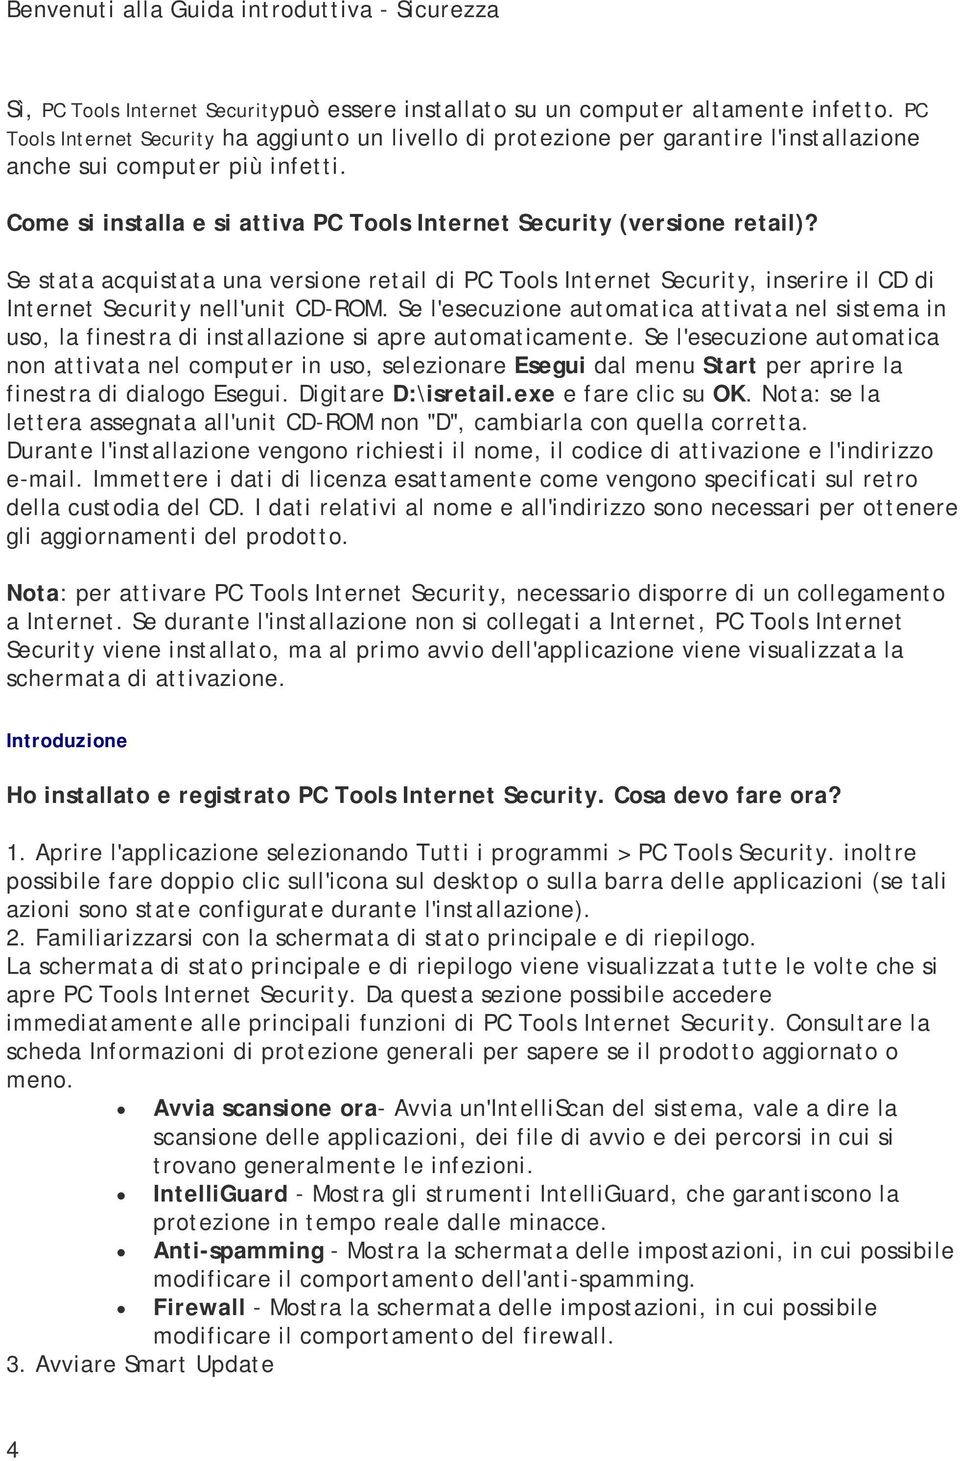 Se stata acquistata una versione retail di PC Tools Internet Security, inserire il CD di Internet Security nell'unit CD-ROM.